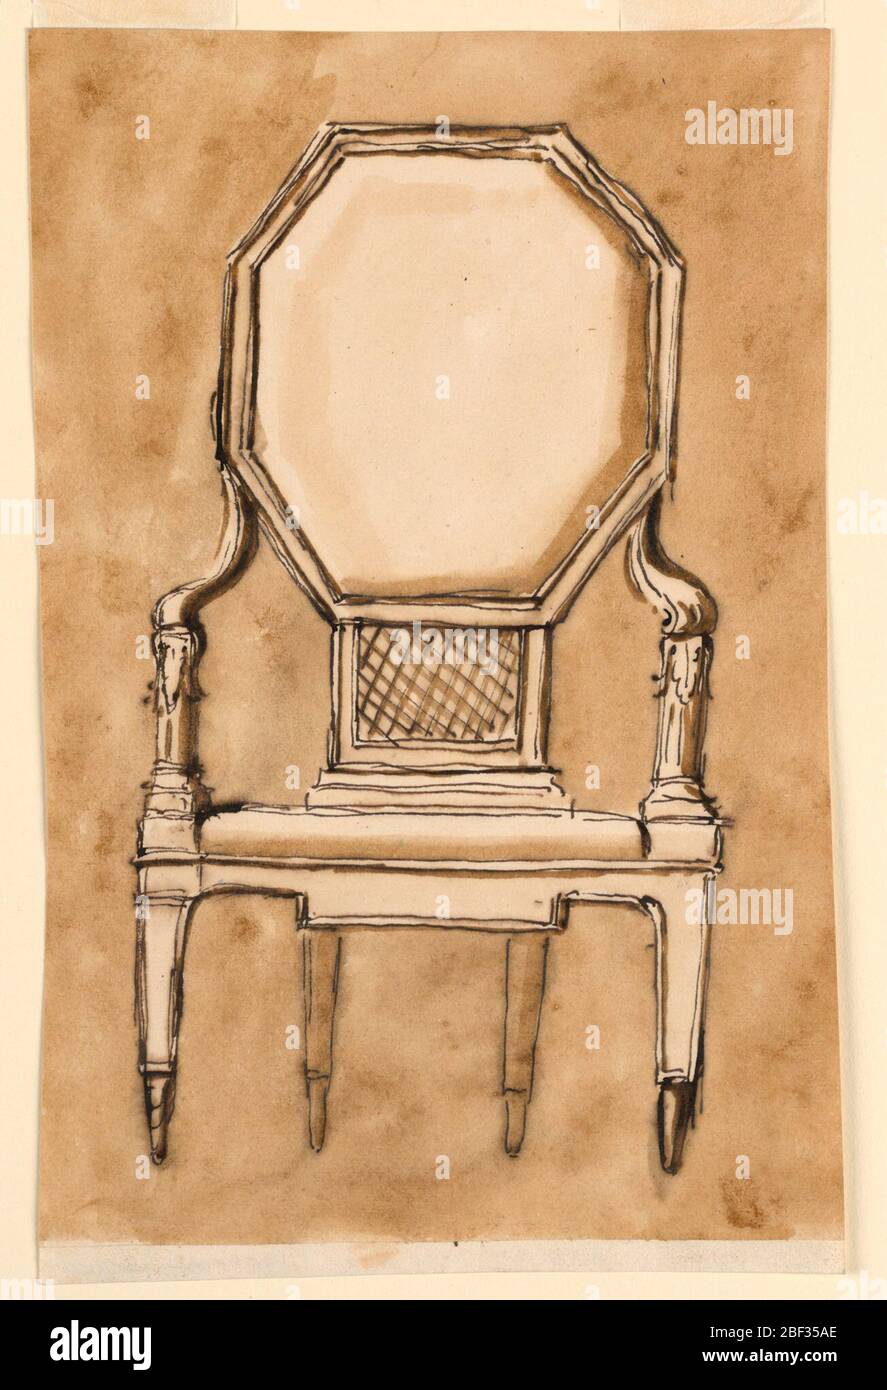 Stuhl. Frontansicht eines Stuhls mit einem großen achteckigen Rücken, schrägen Armen, die in Akanthus-Blättern enden, wo die Hände ruhen würden, konischen geometrischen Beinen und einem Caning, der den Rücken mit dem Sitz verbindet. Stockfoto